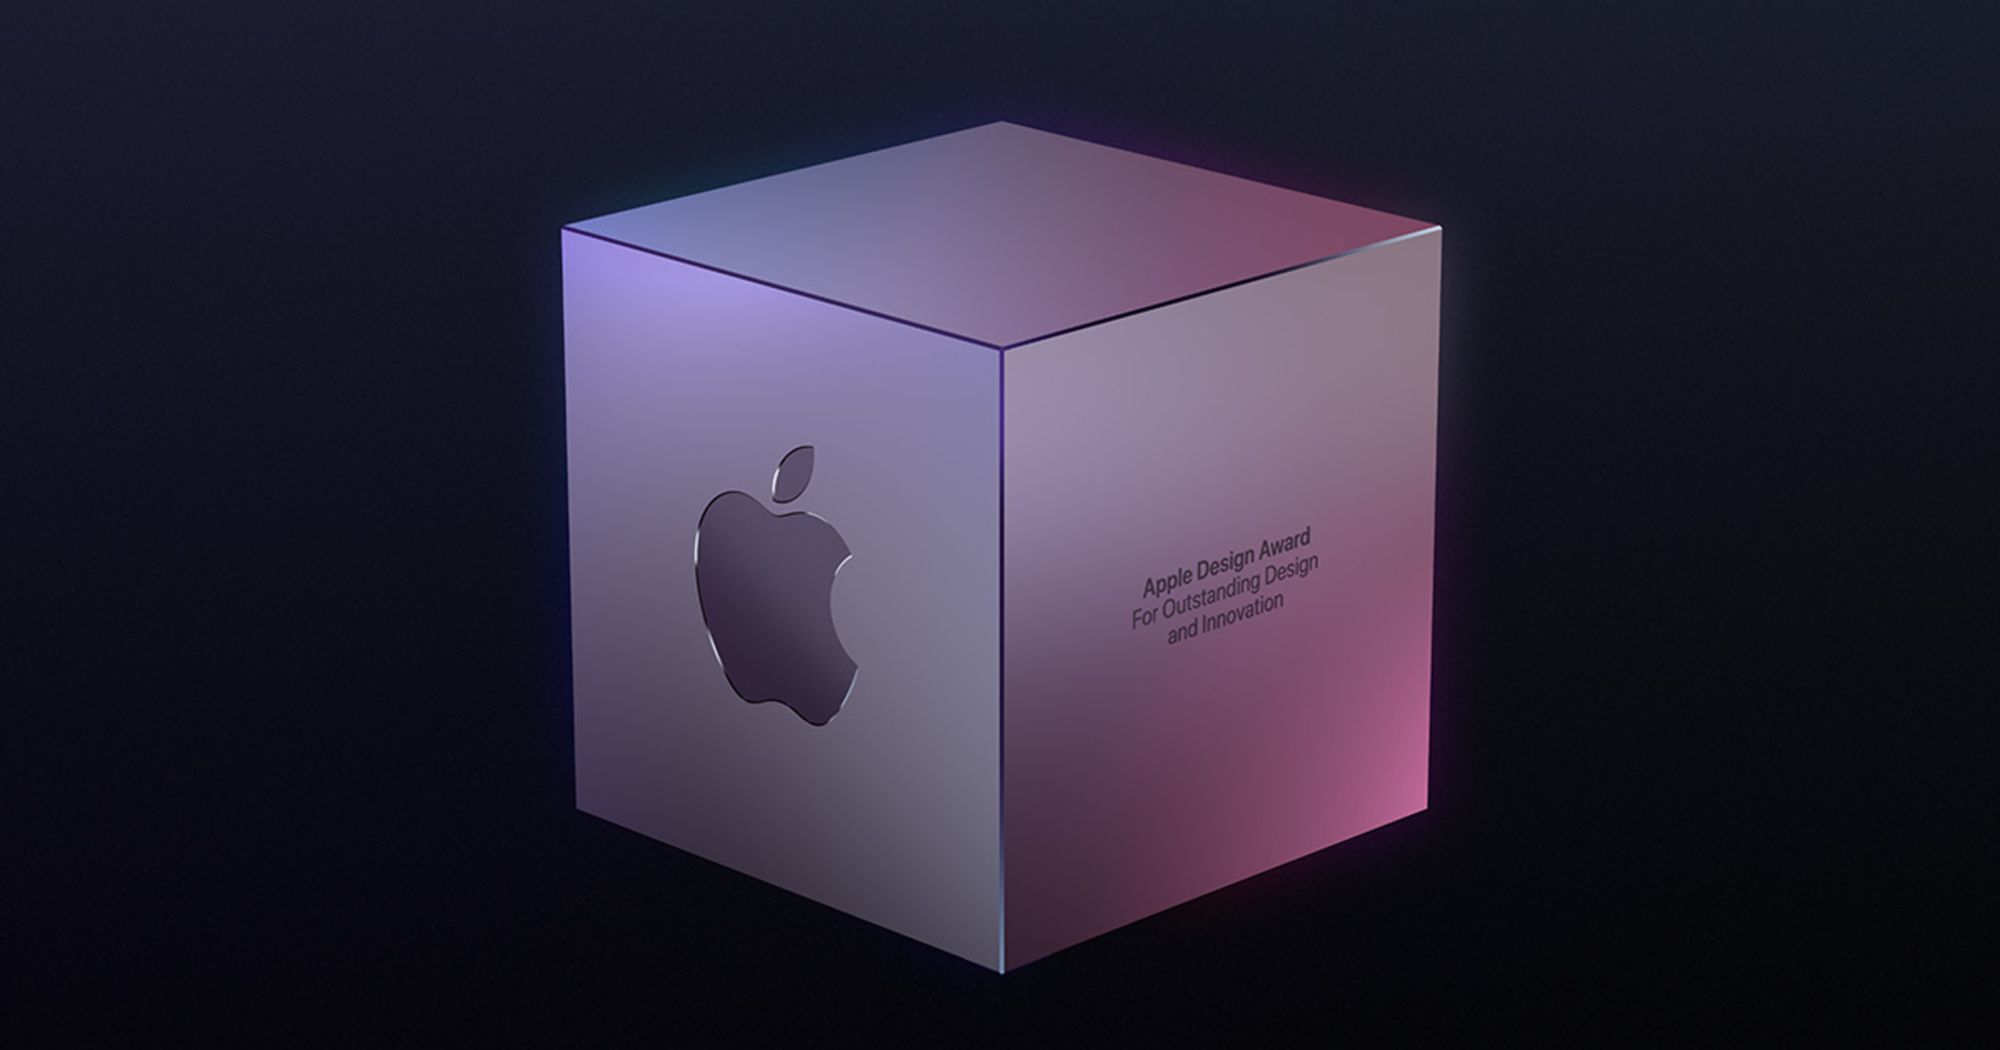 Apple назвала победителей премии Apple Design Award 2021